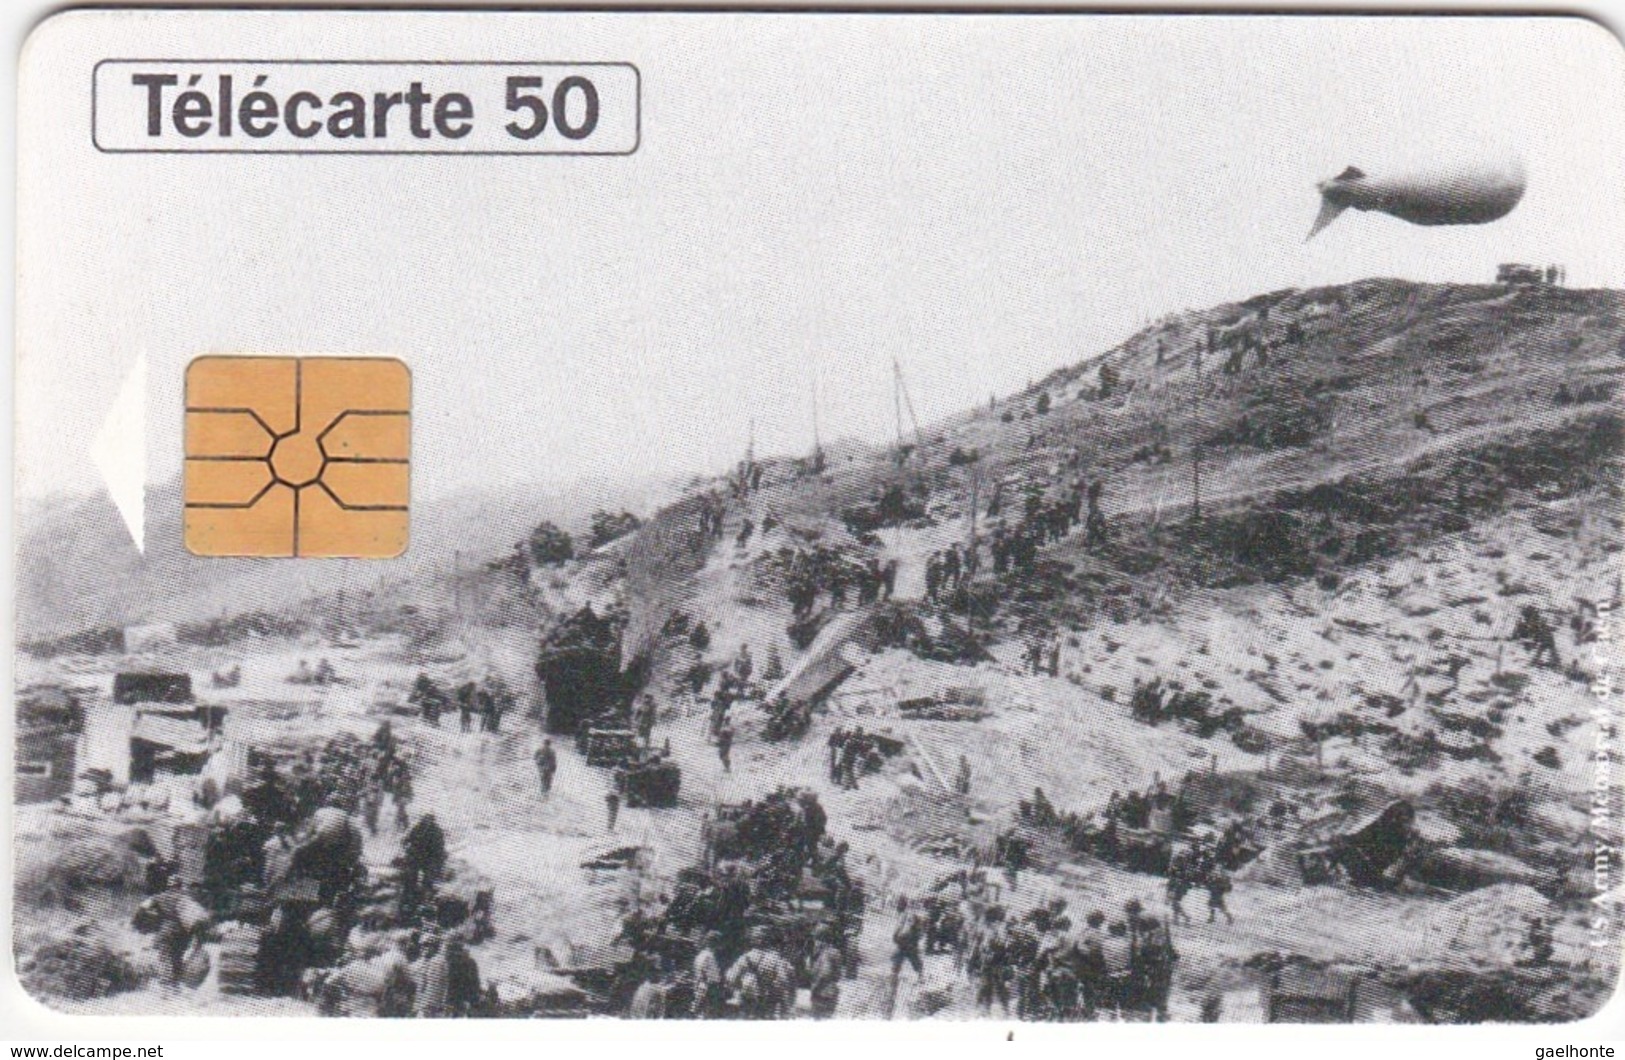 TC119 TÉLÉCARTE 50 UNITÉS - 1944-1994 - 50ème ANNIVERSAIRE DES DEBARQUEMENTS... - OMAHA BEACH 10 JUIN 1944 - Army